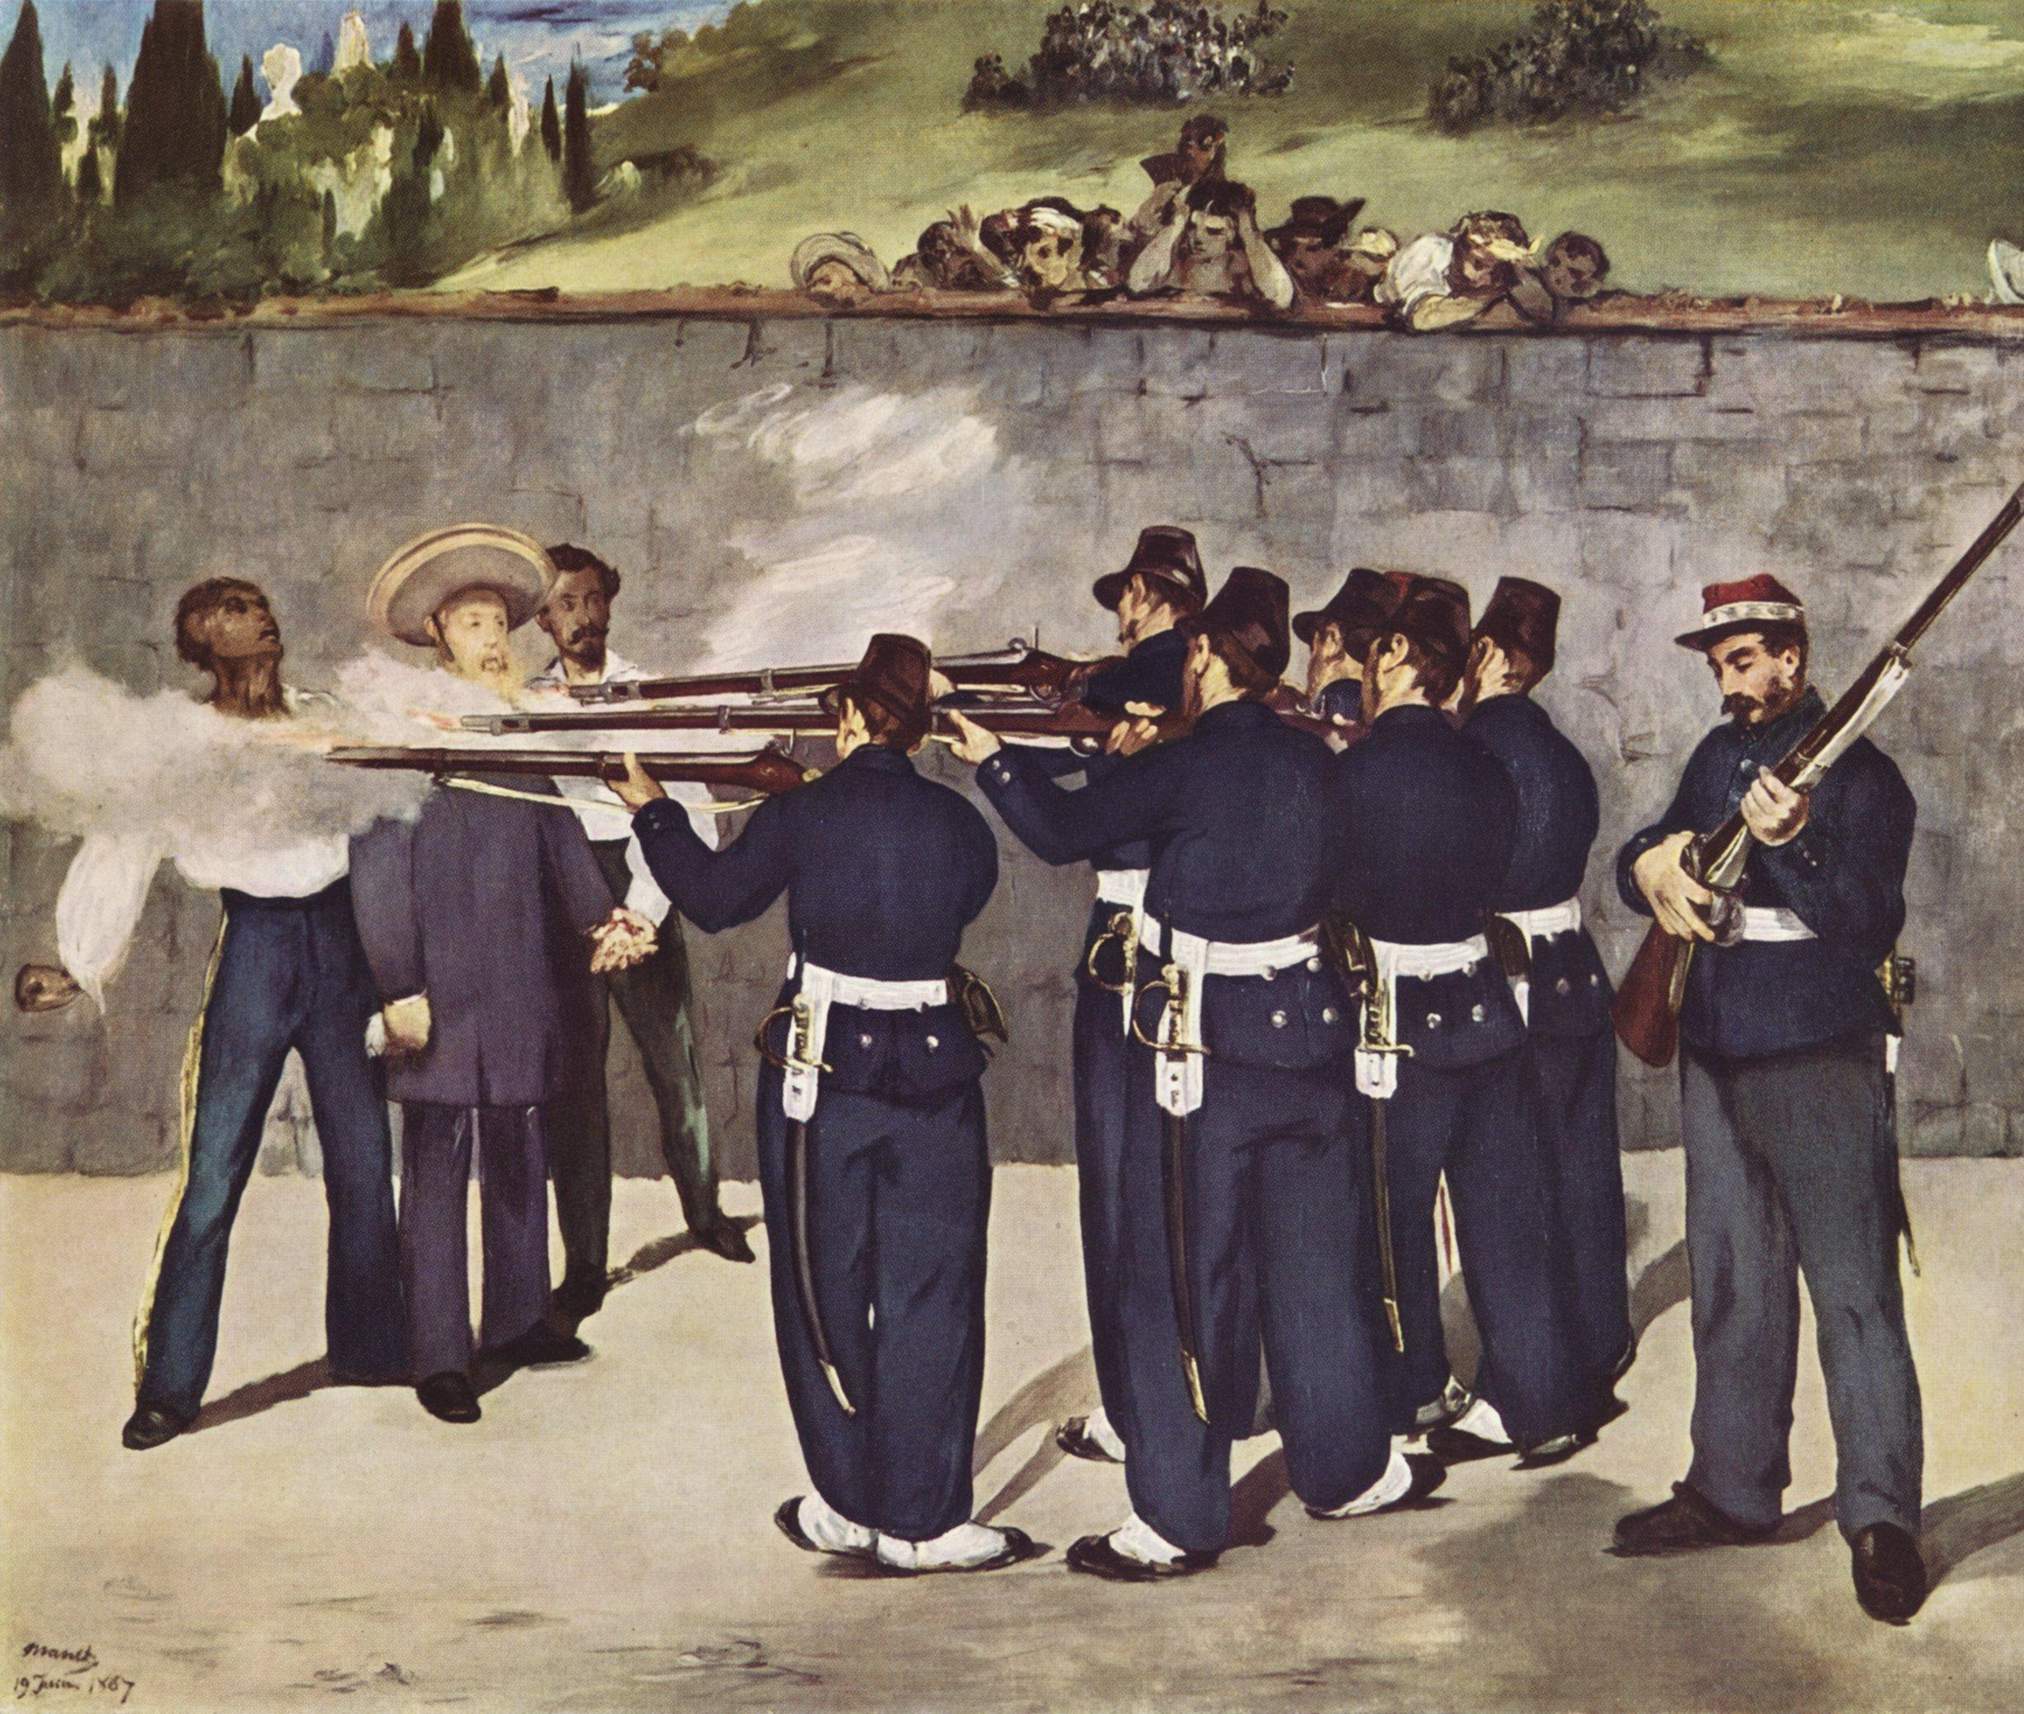 マキシミリアンは1869年に「メキシコ皇帝」即位問題で既にメキシコで処刑されていた